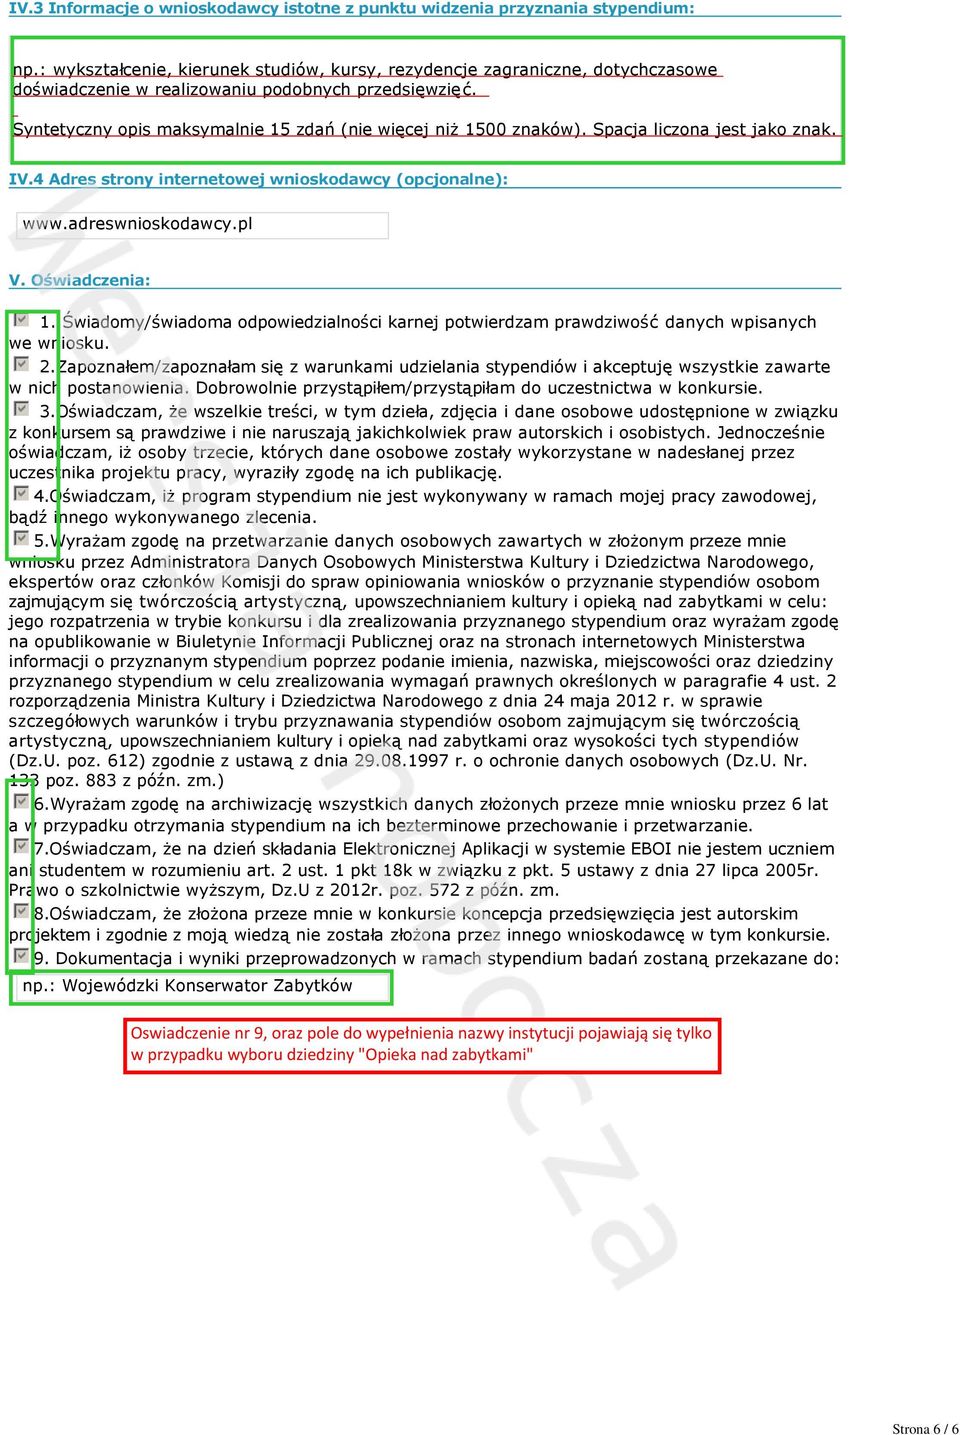 Spacja liczona jest jako znak. IV.4 Adres strony internetowej wnioskodawcy (opcjonalne): www.adreswnioskodawcy.pl V. Oświadczenia: gfedcb 1.